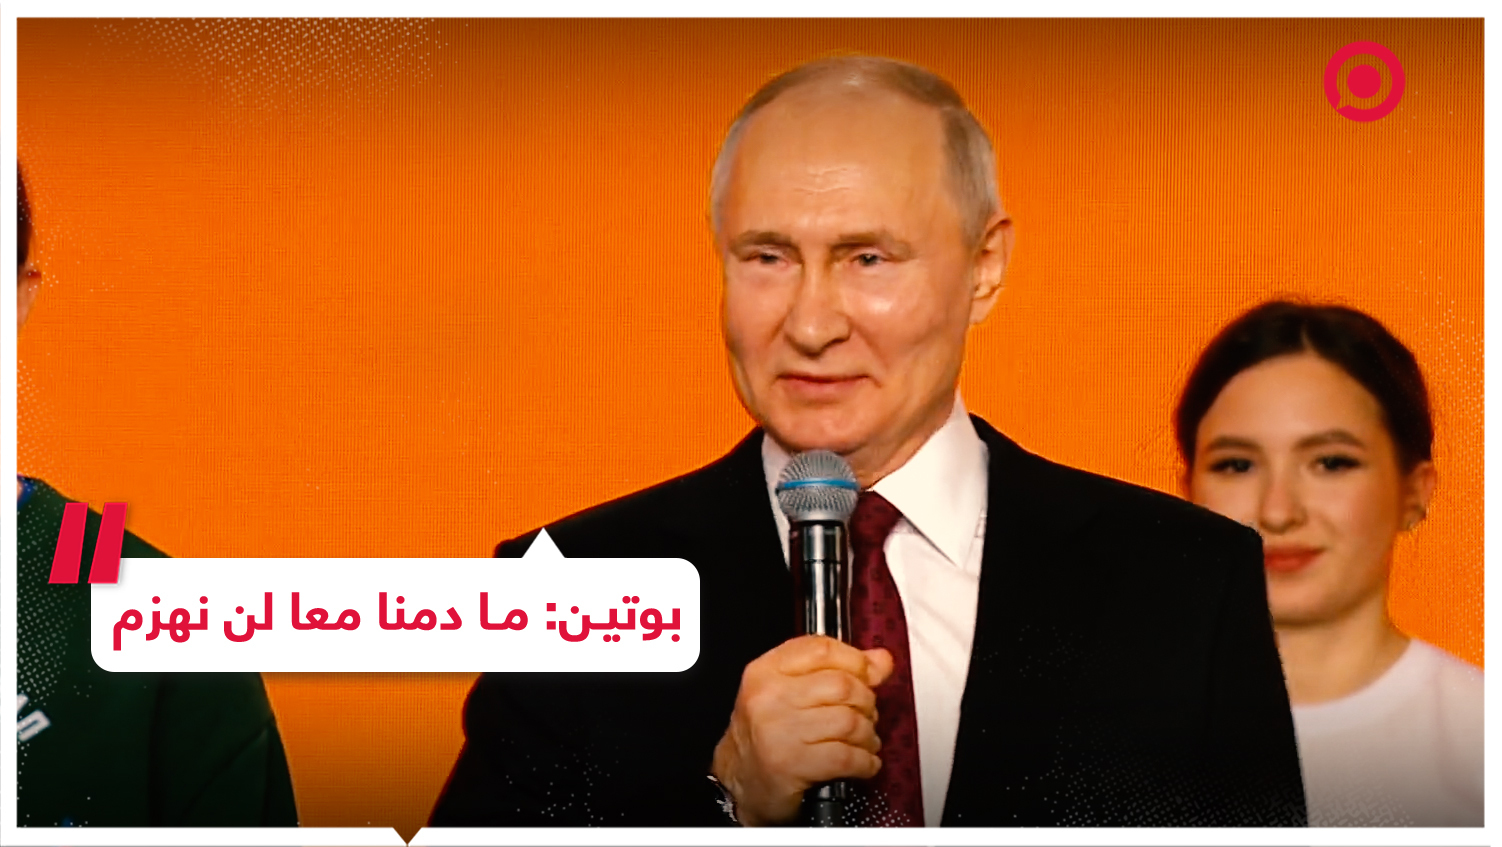 بوتين خلال كلمته في معرض ومنتدى "روسيا": ما دمنا معا لن نهزم